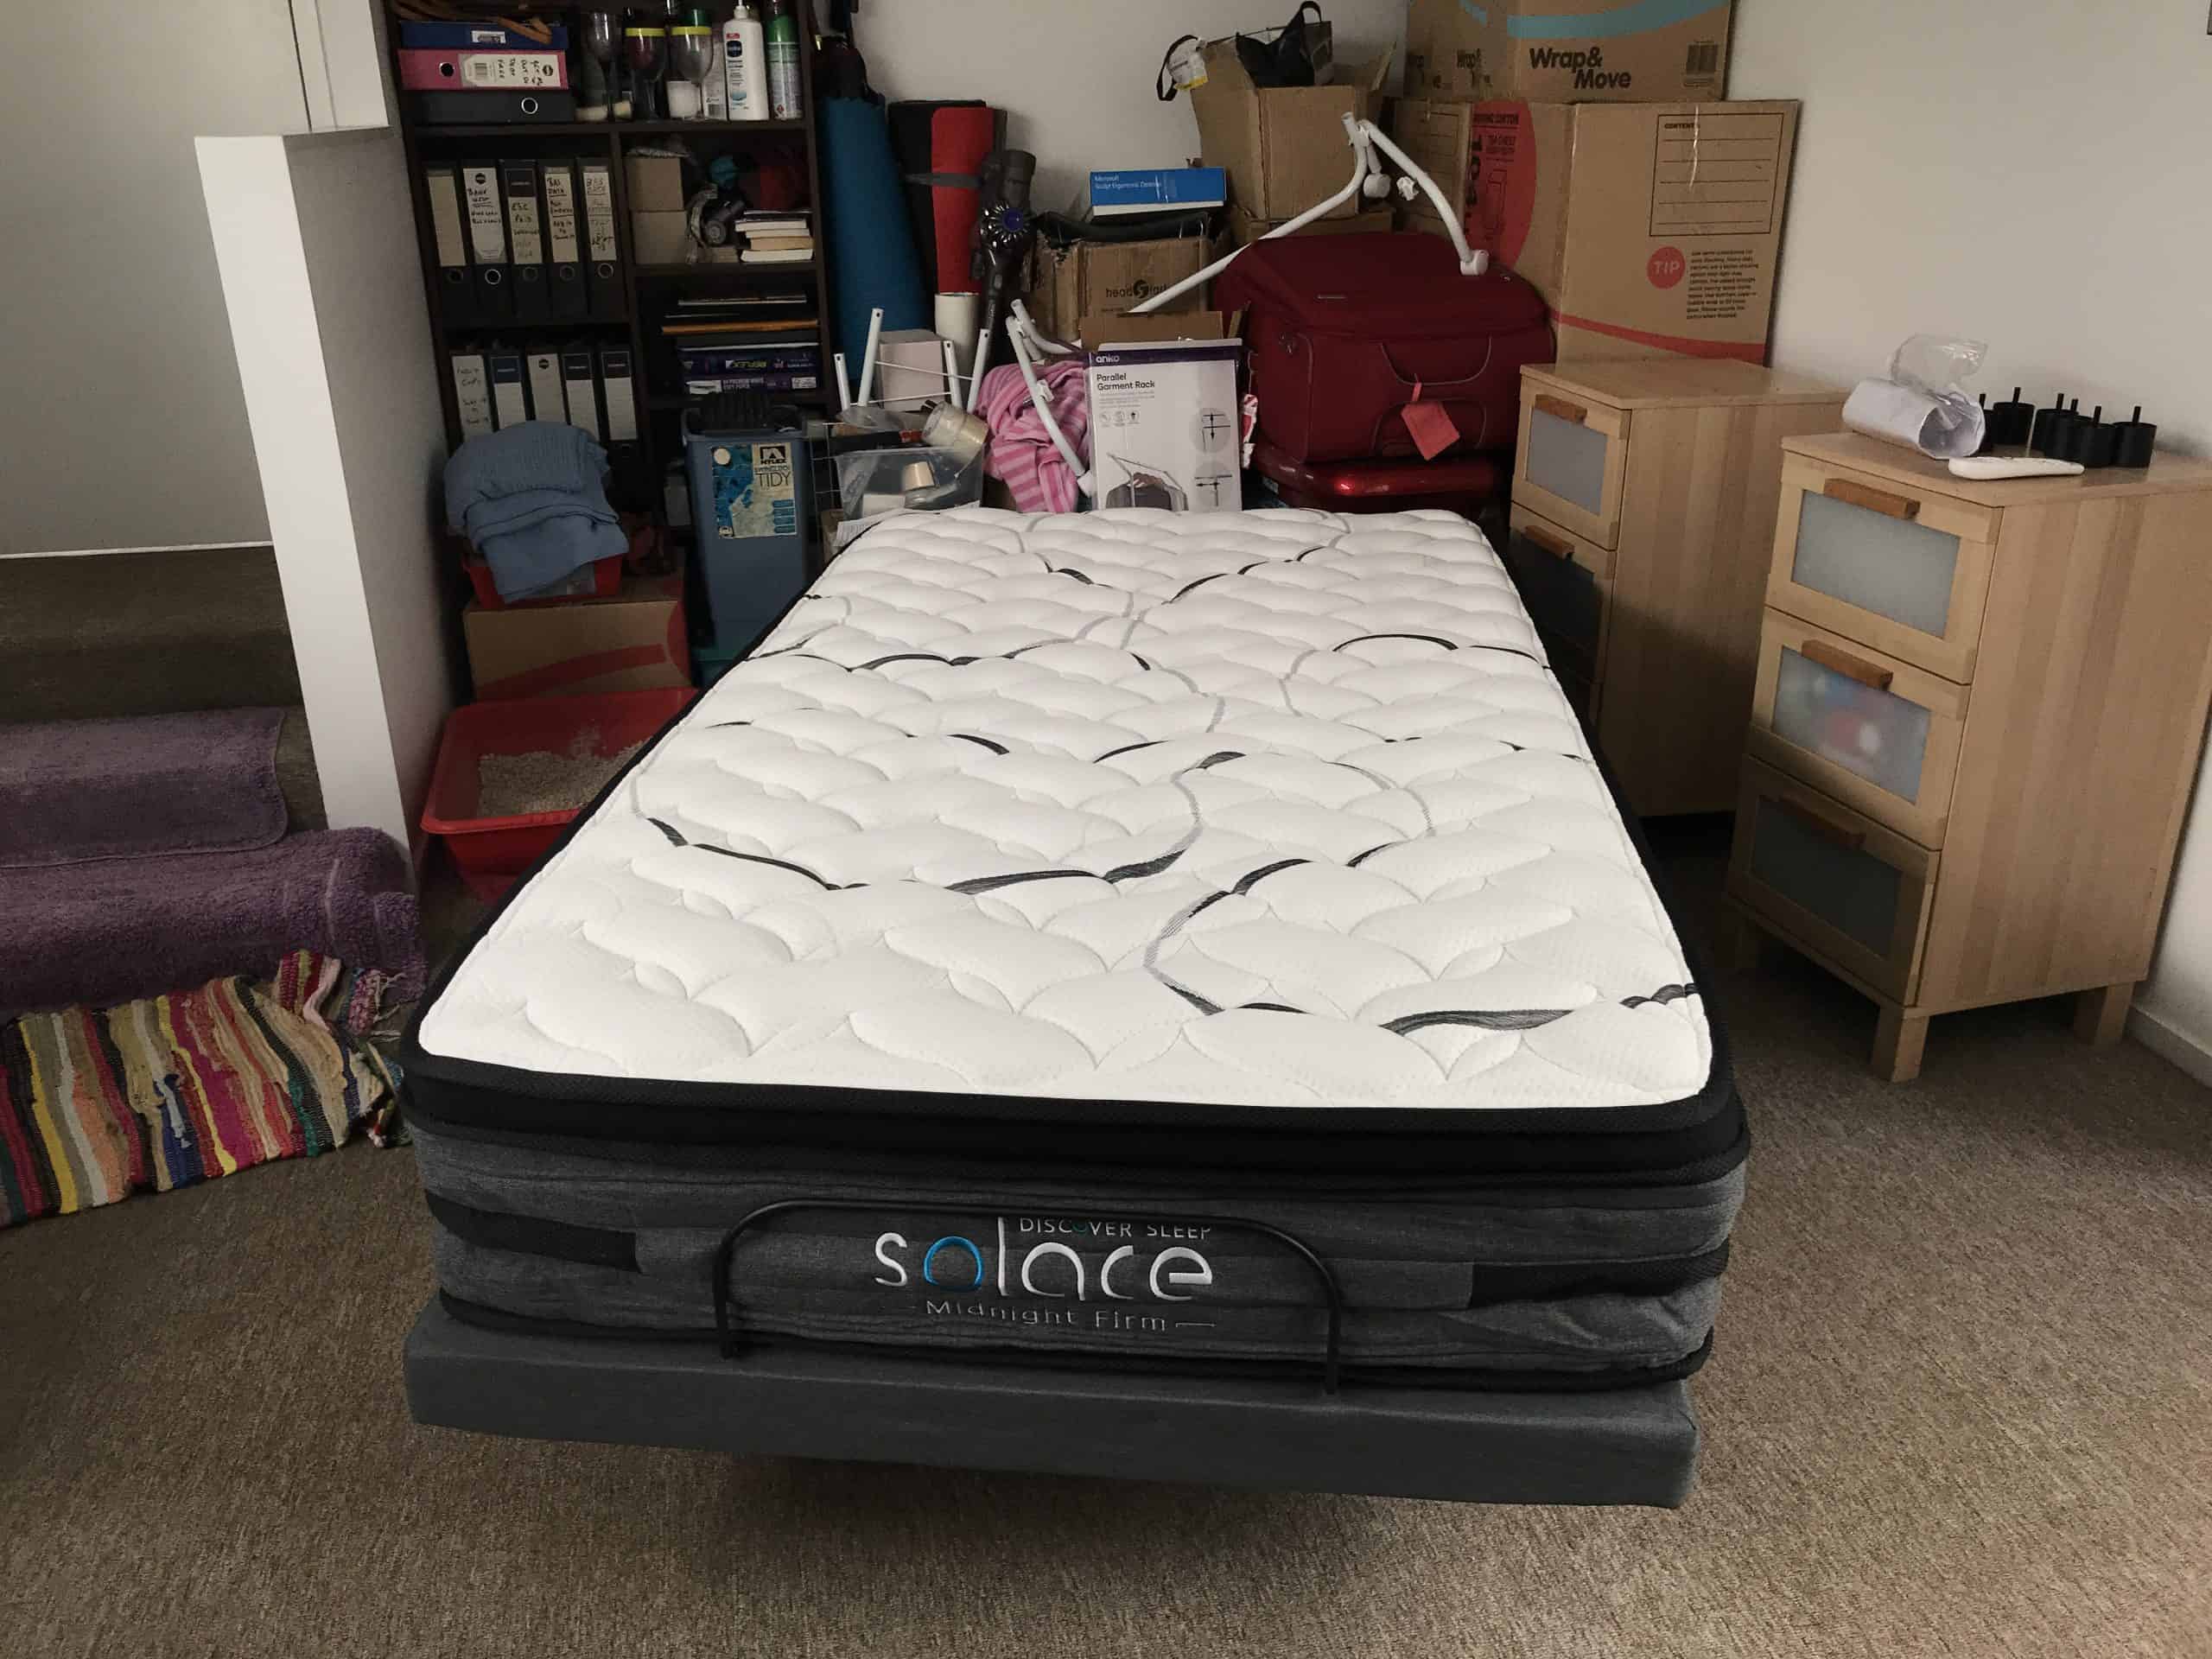 Solace Sleep adjustable bed customer